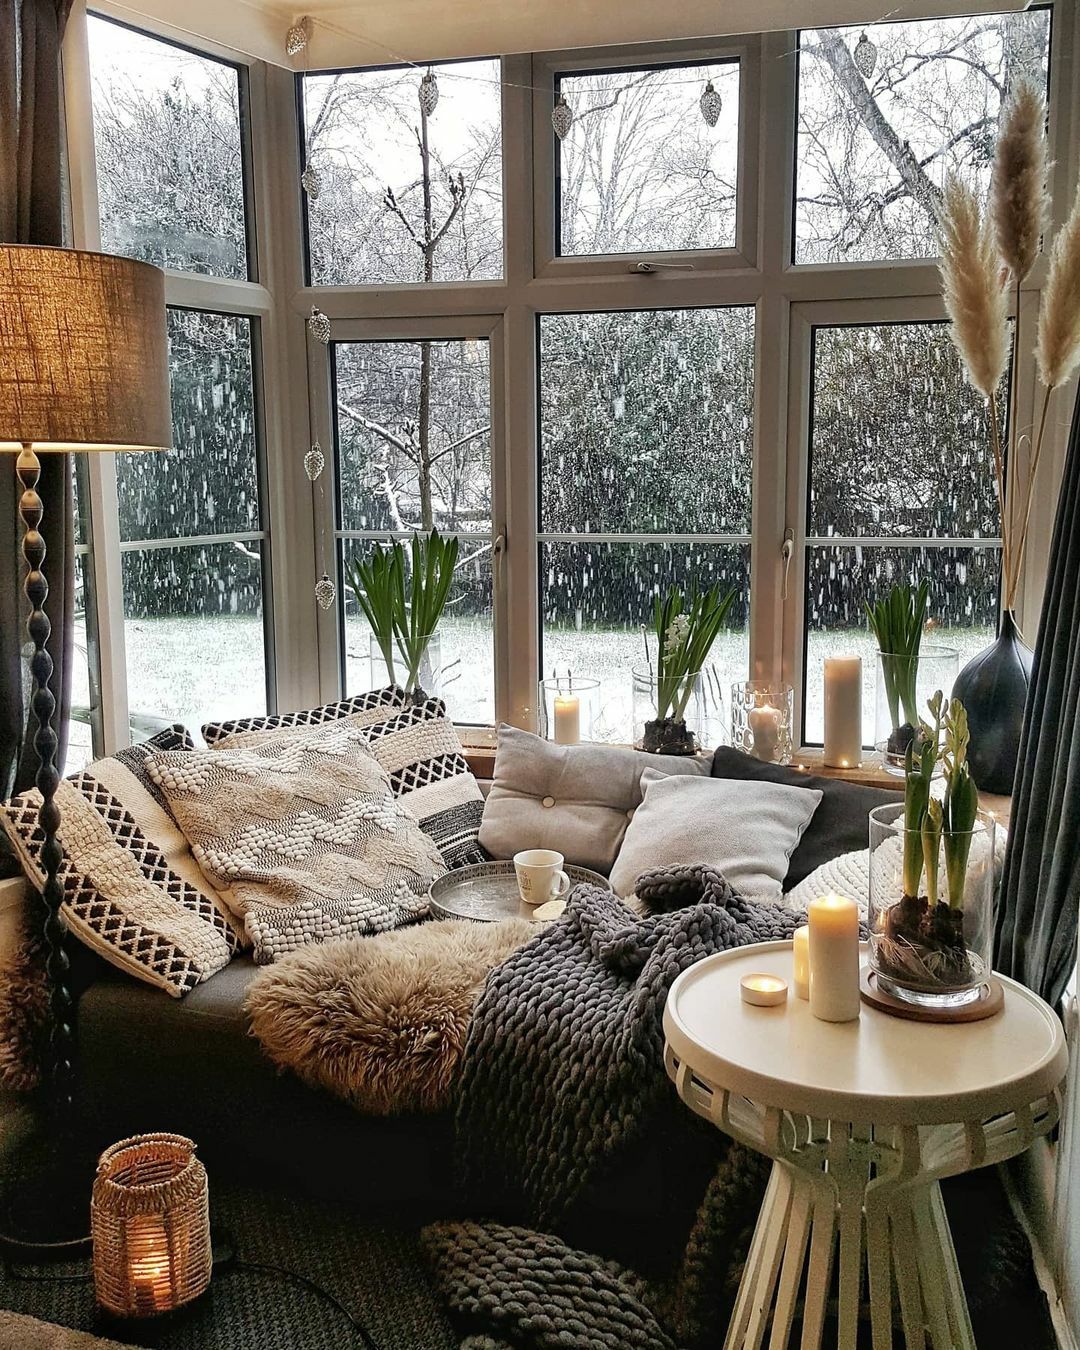 Vues d’hiver depuis un coin de fenêtre, Angleterre